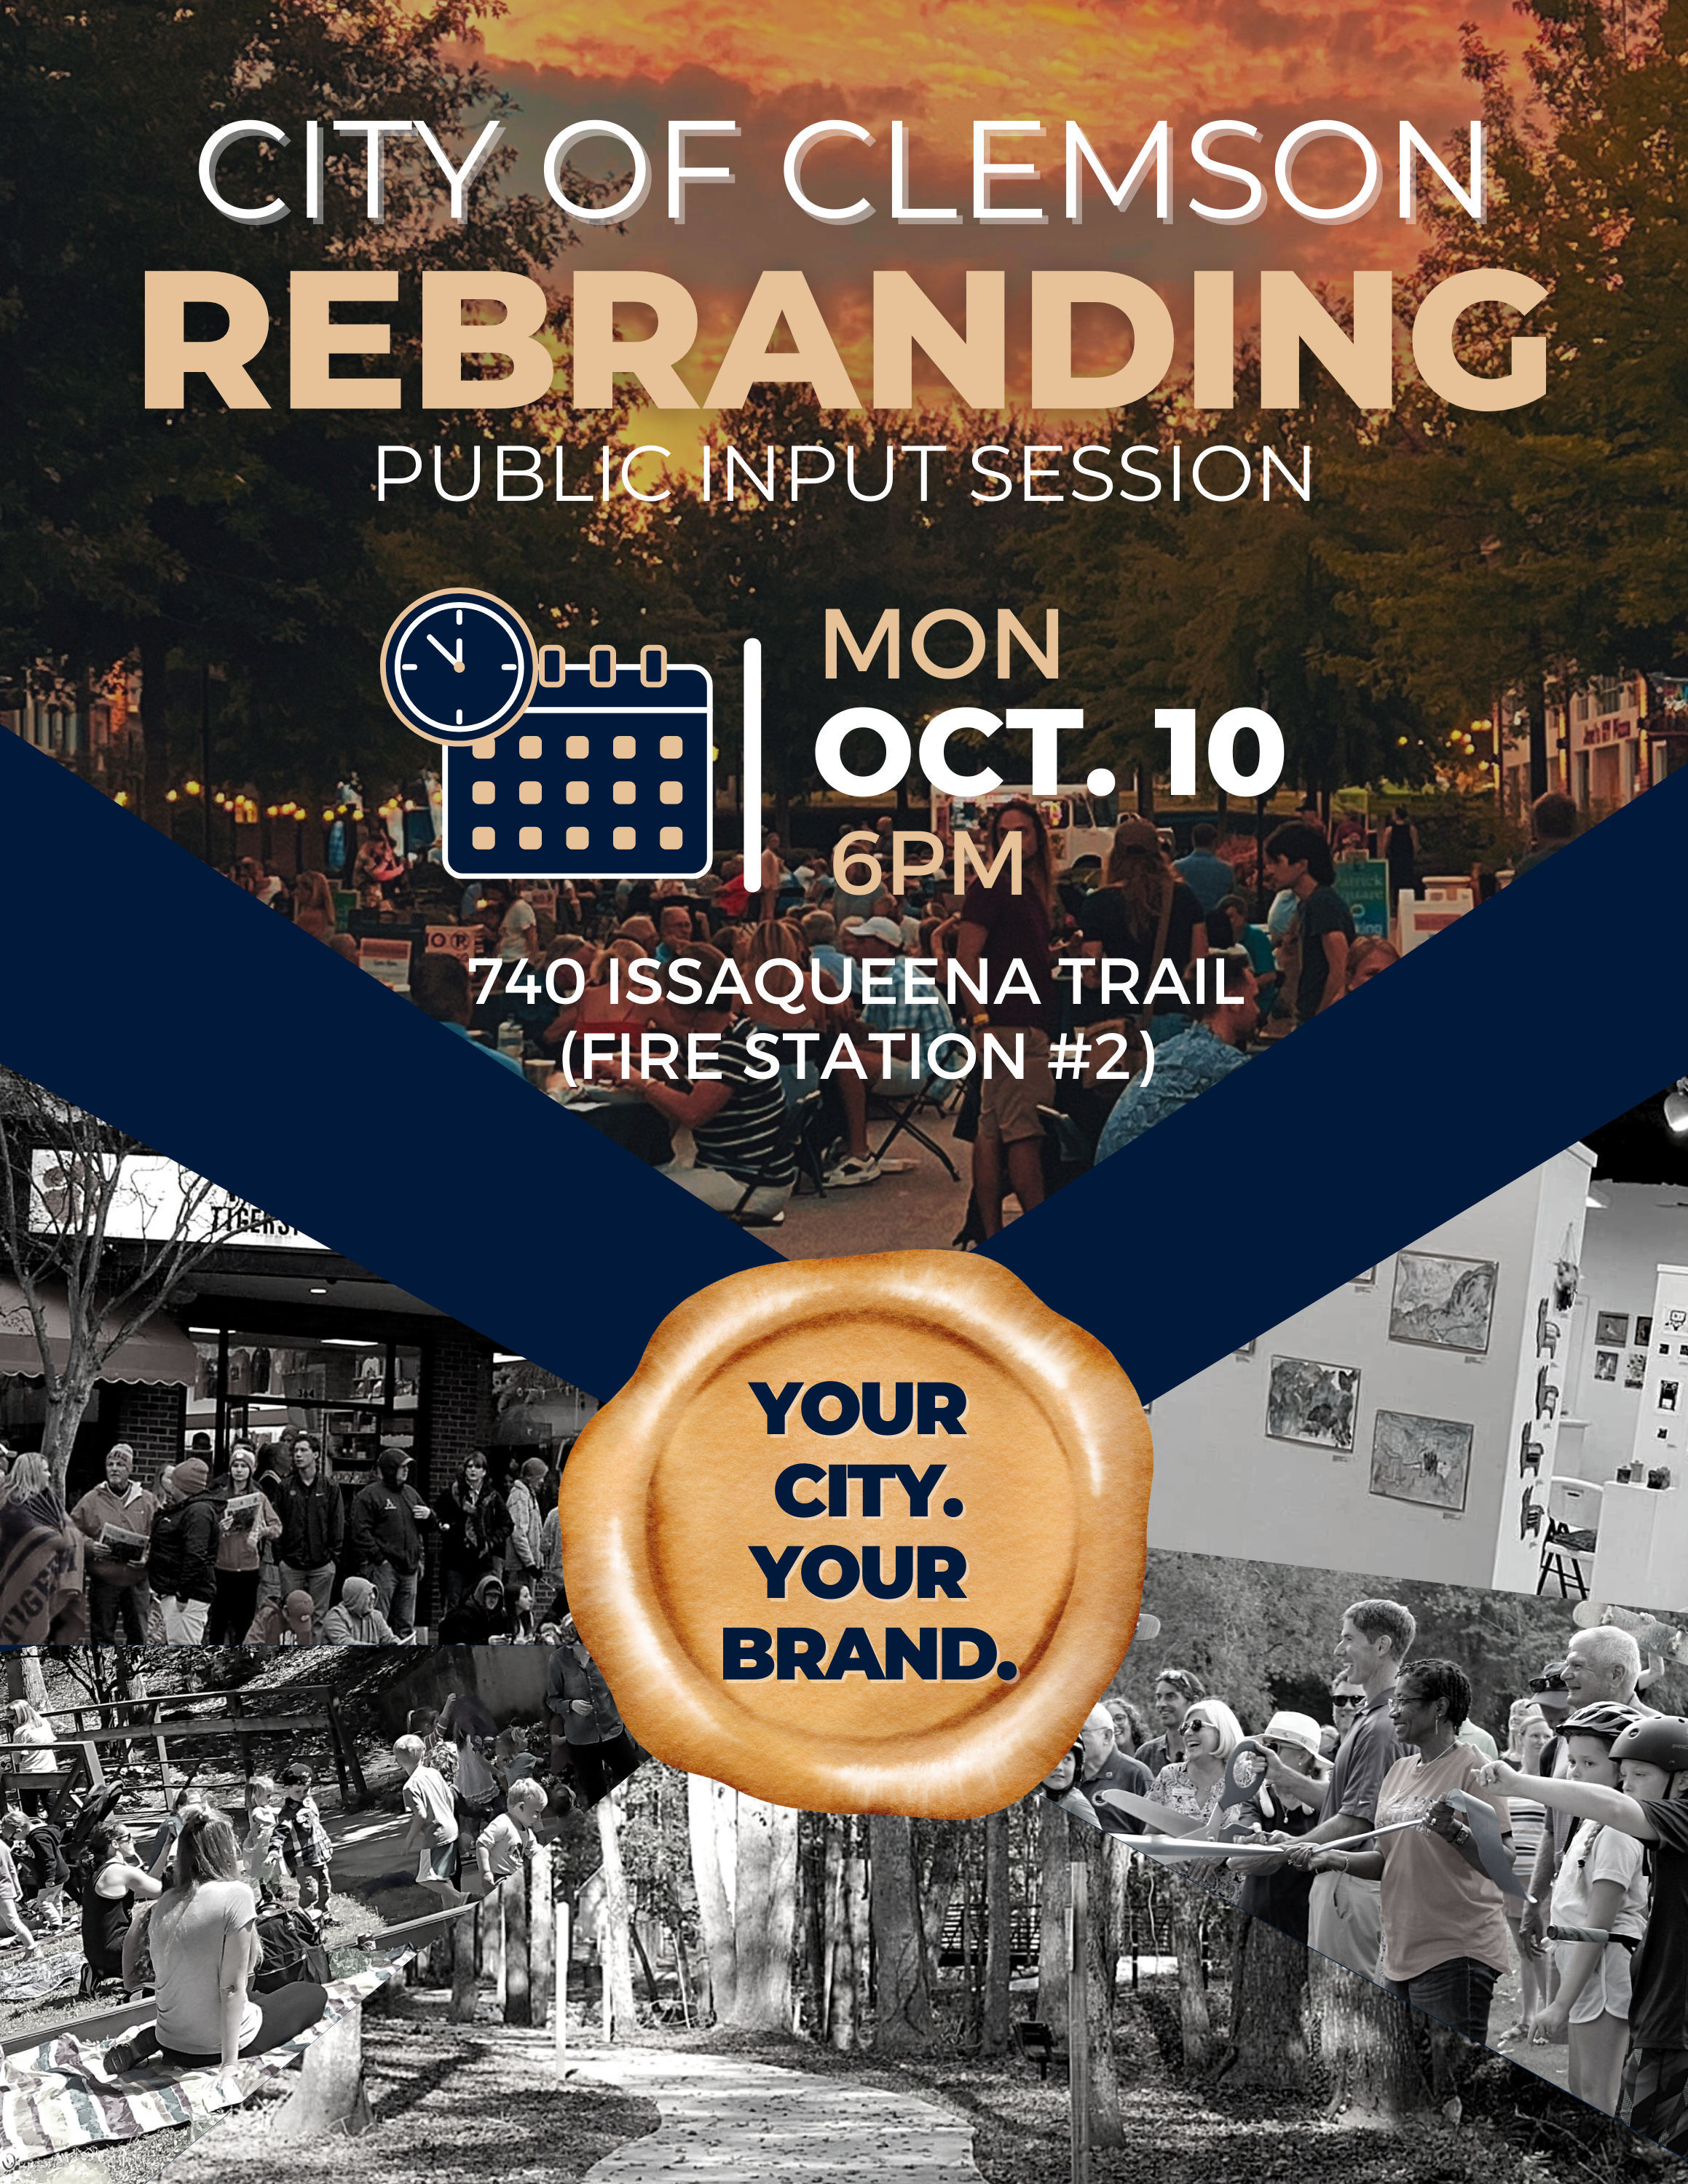 Clemson Rebranding October 10